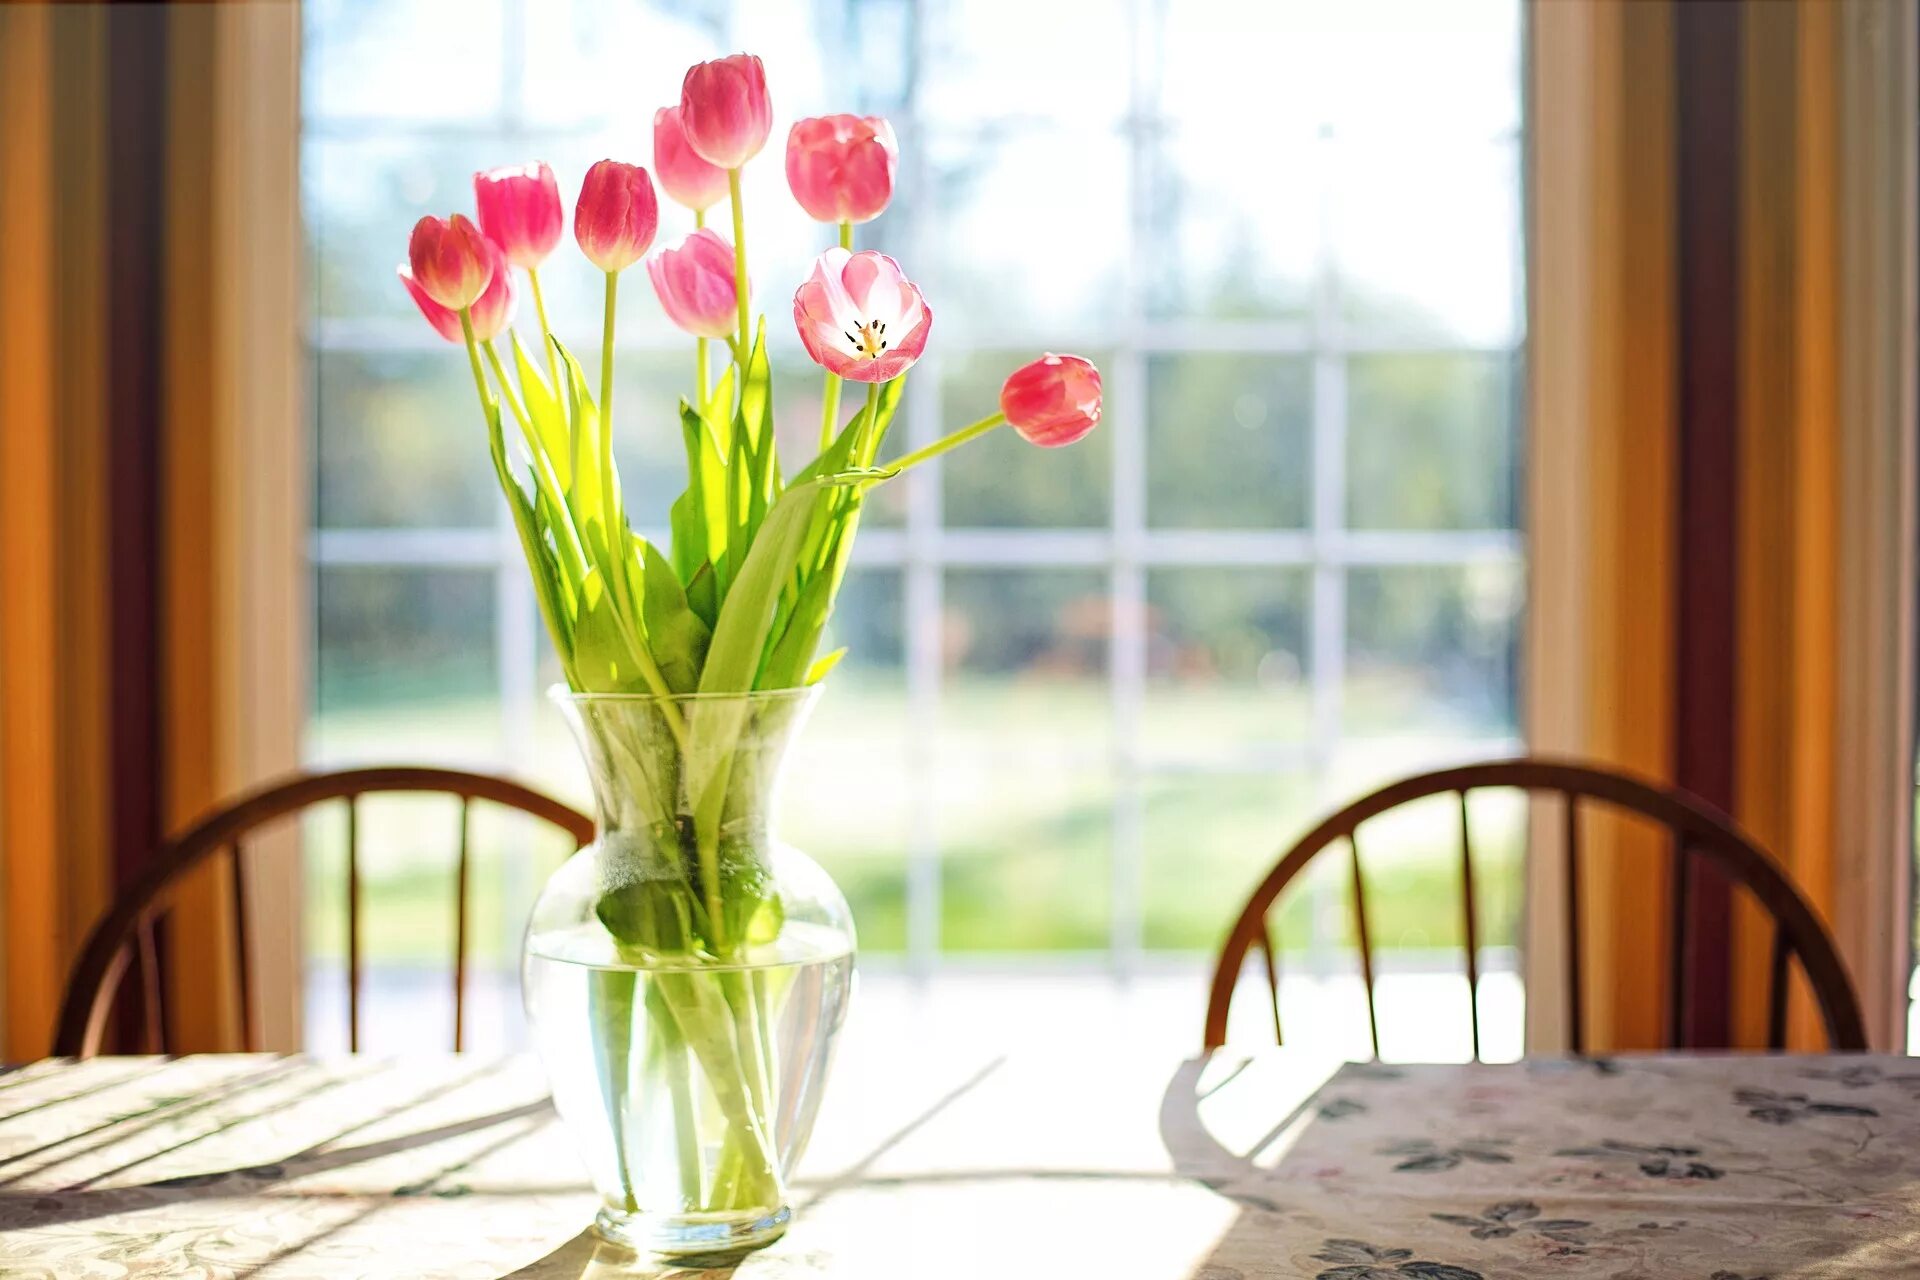 Цветы в вазе. Весенние цветы на окне. Весенние цветы на подоконнике. Весенний букет цветов утром